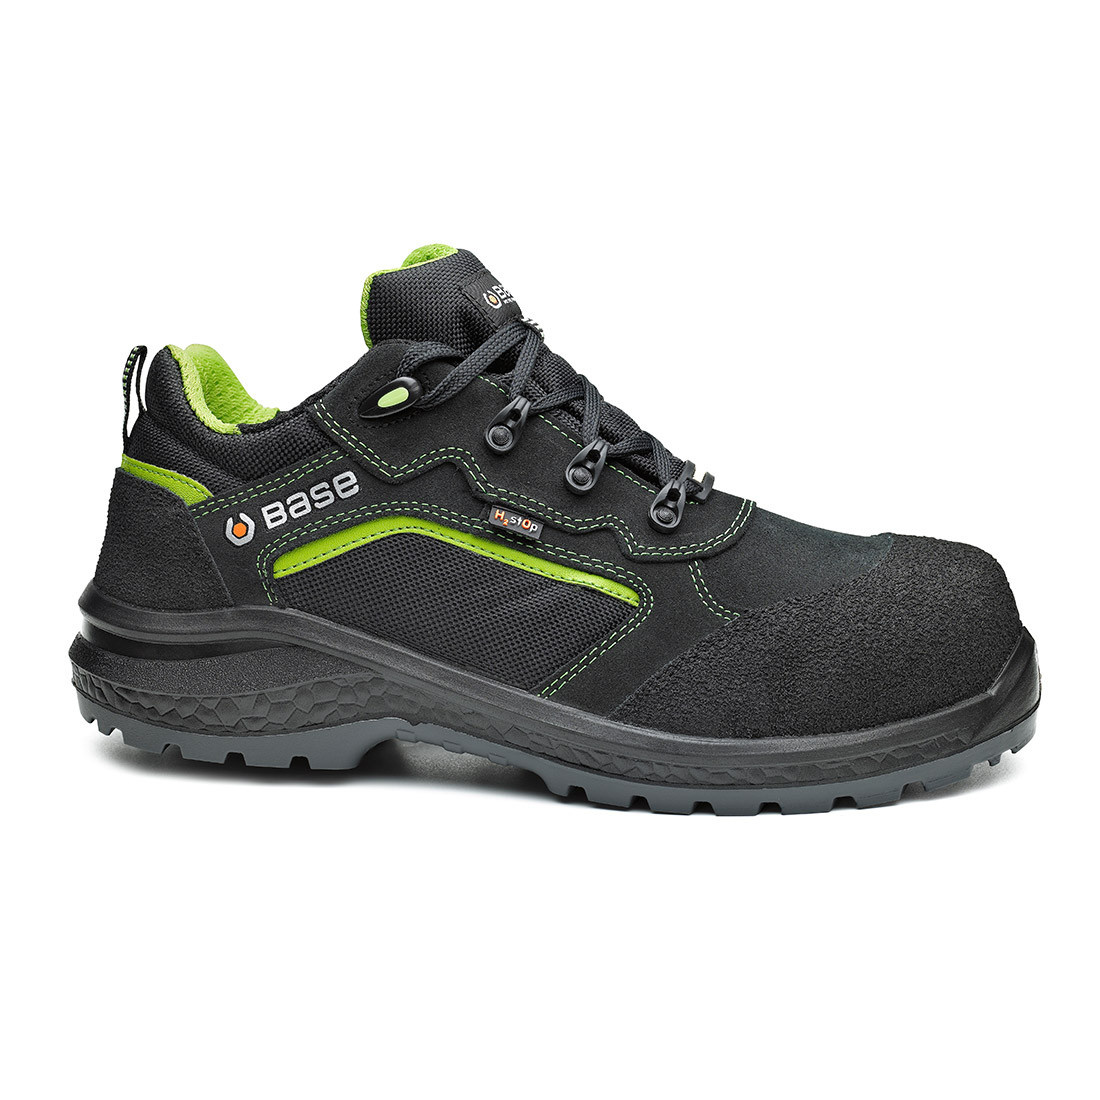 Pantofi Be-Powerful S3 WR SRC - Incaltaminte de protectie | Bocanci, Pantofi, Sandale, Cizme